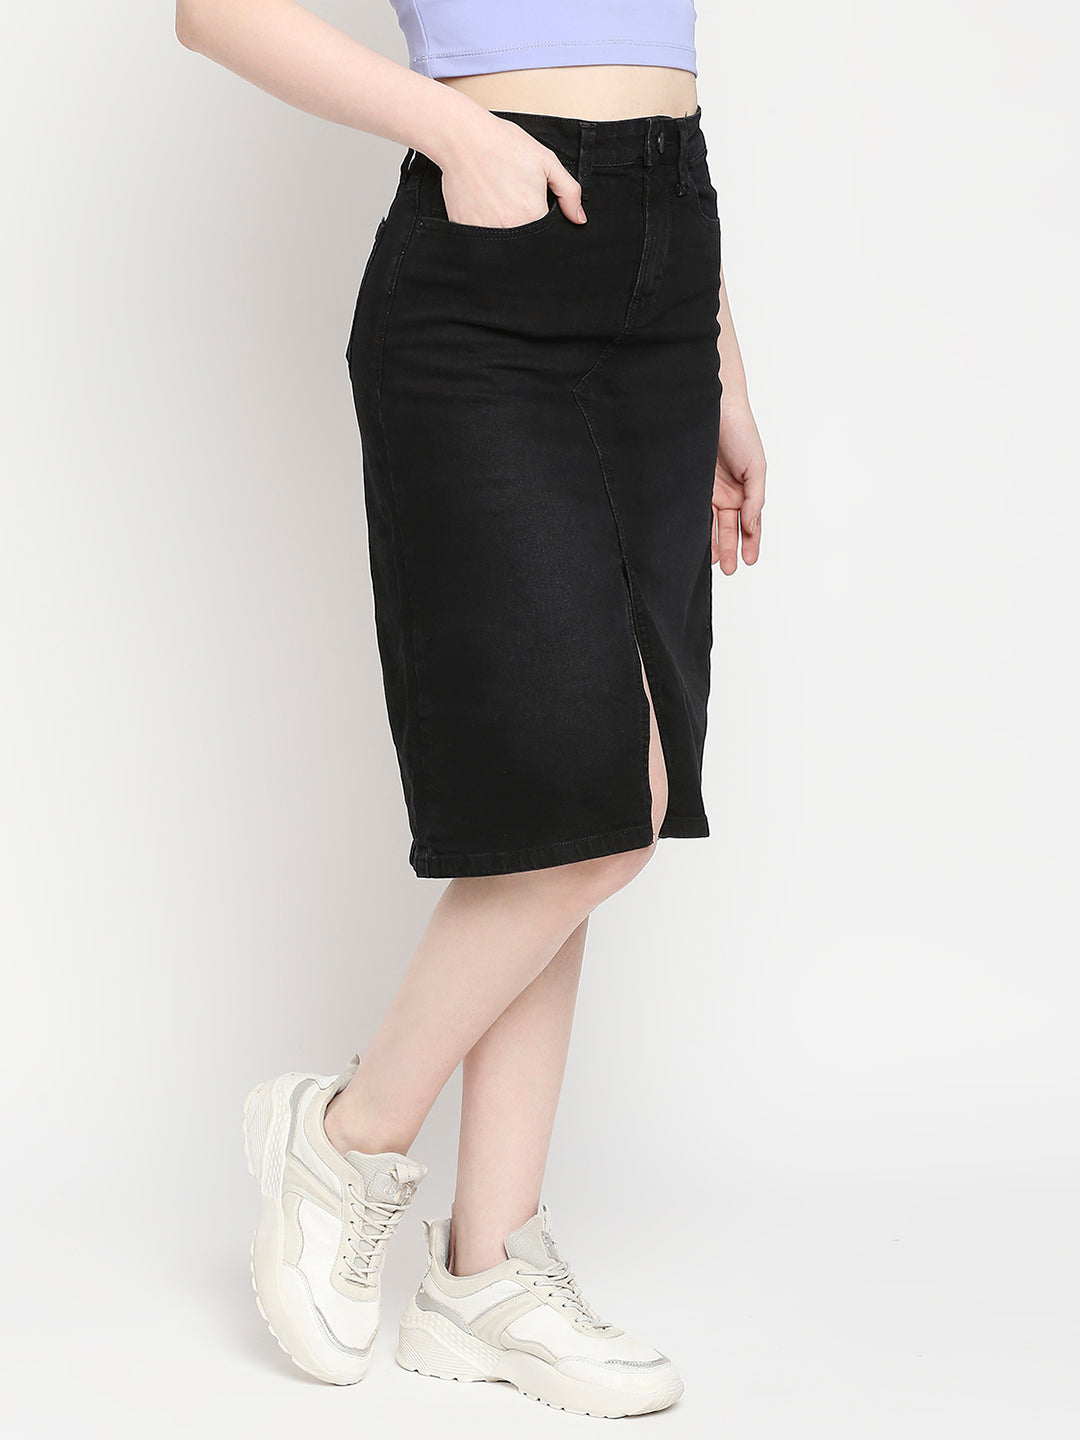 Spykar Black Cotton Straight Fit Regular Length Skirt For Women (Bella)